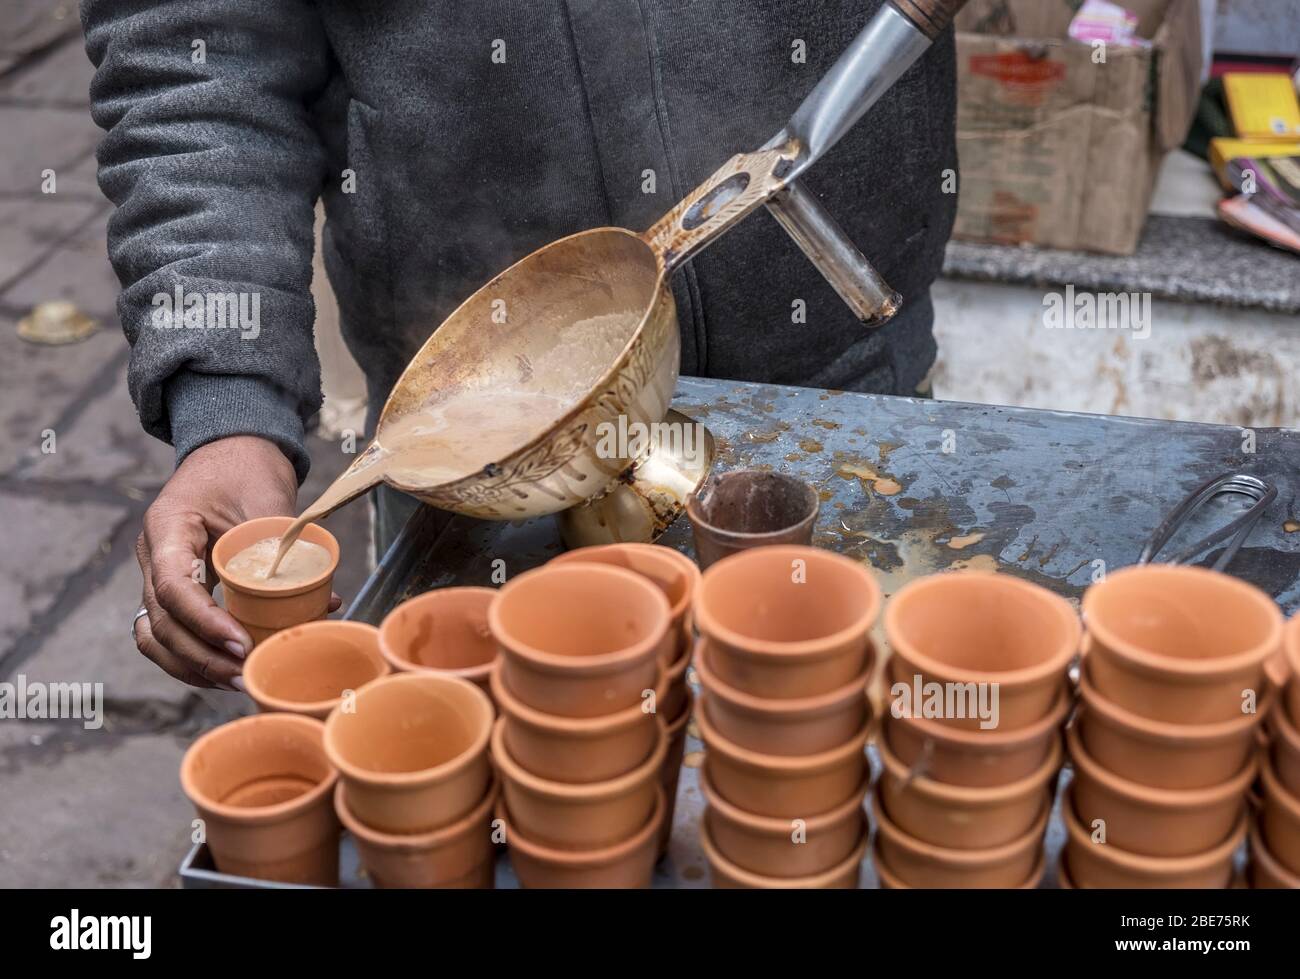 tandoori Chai in Indien - würziger Milchtee, der über eine heiße Terrakotta-Tasse direkt aus dem Tandoori-Ofen gegossen wird Stockfoto